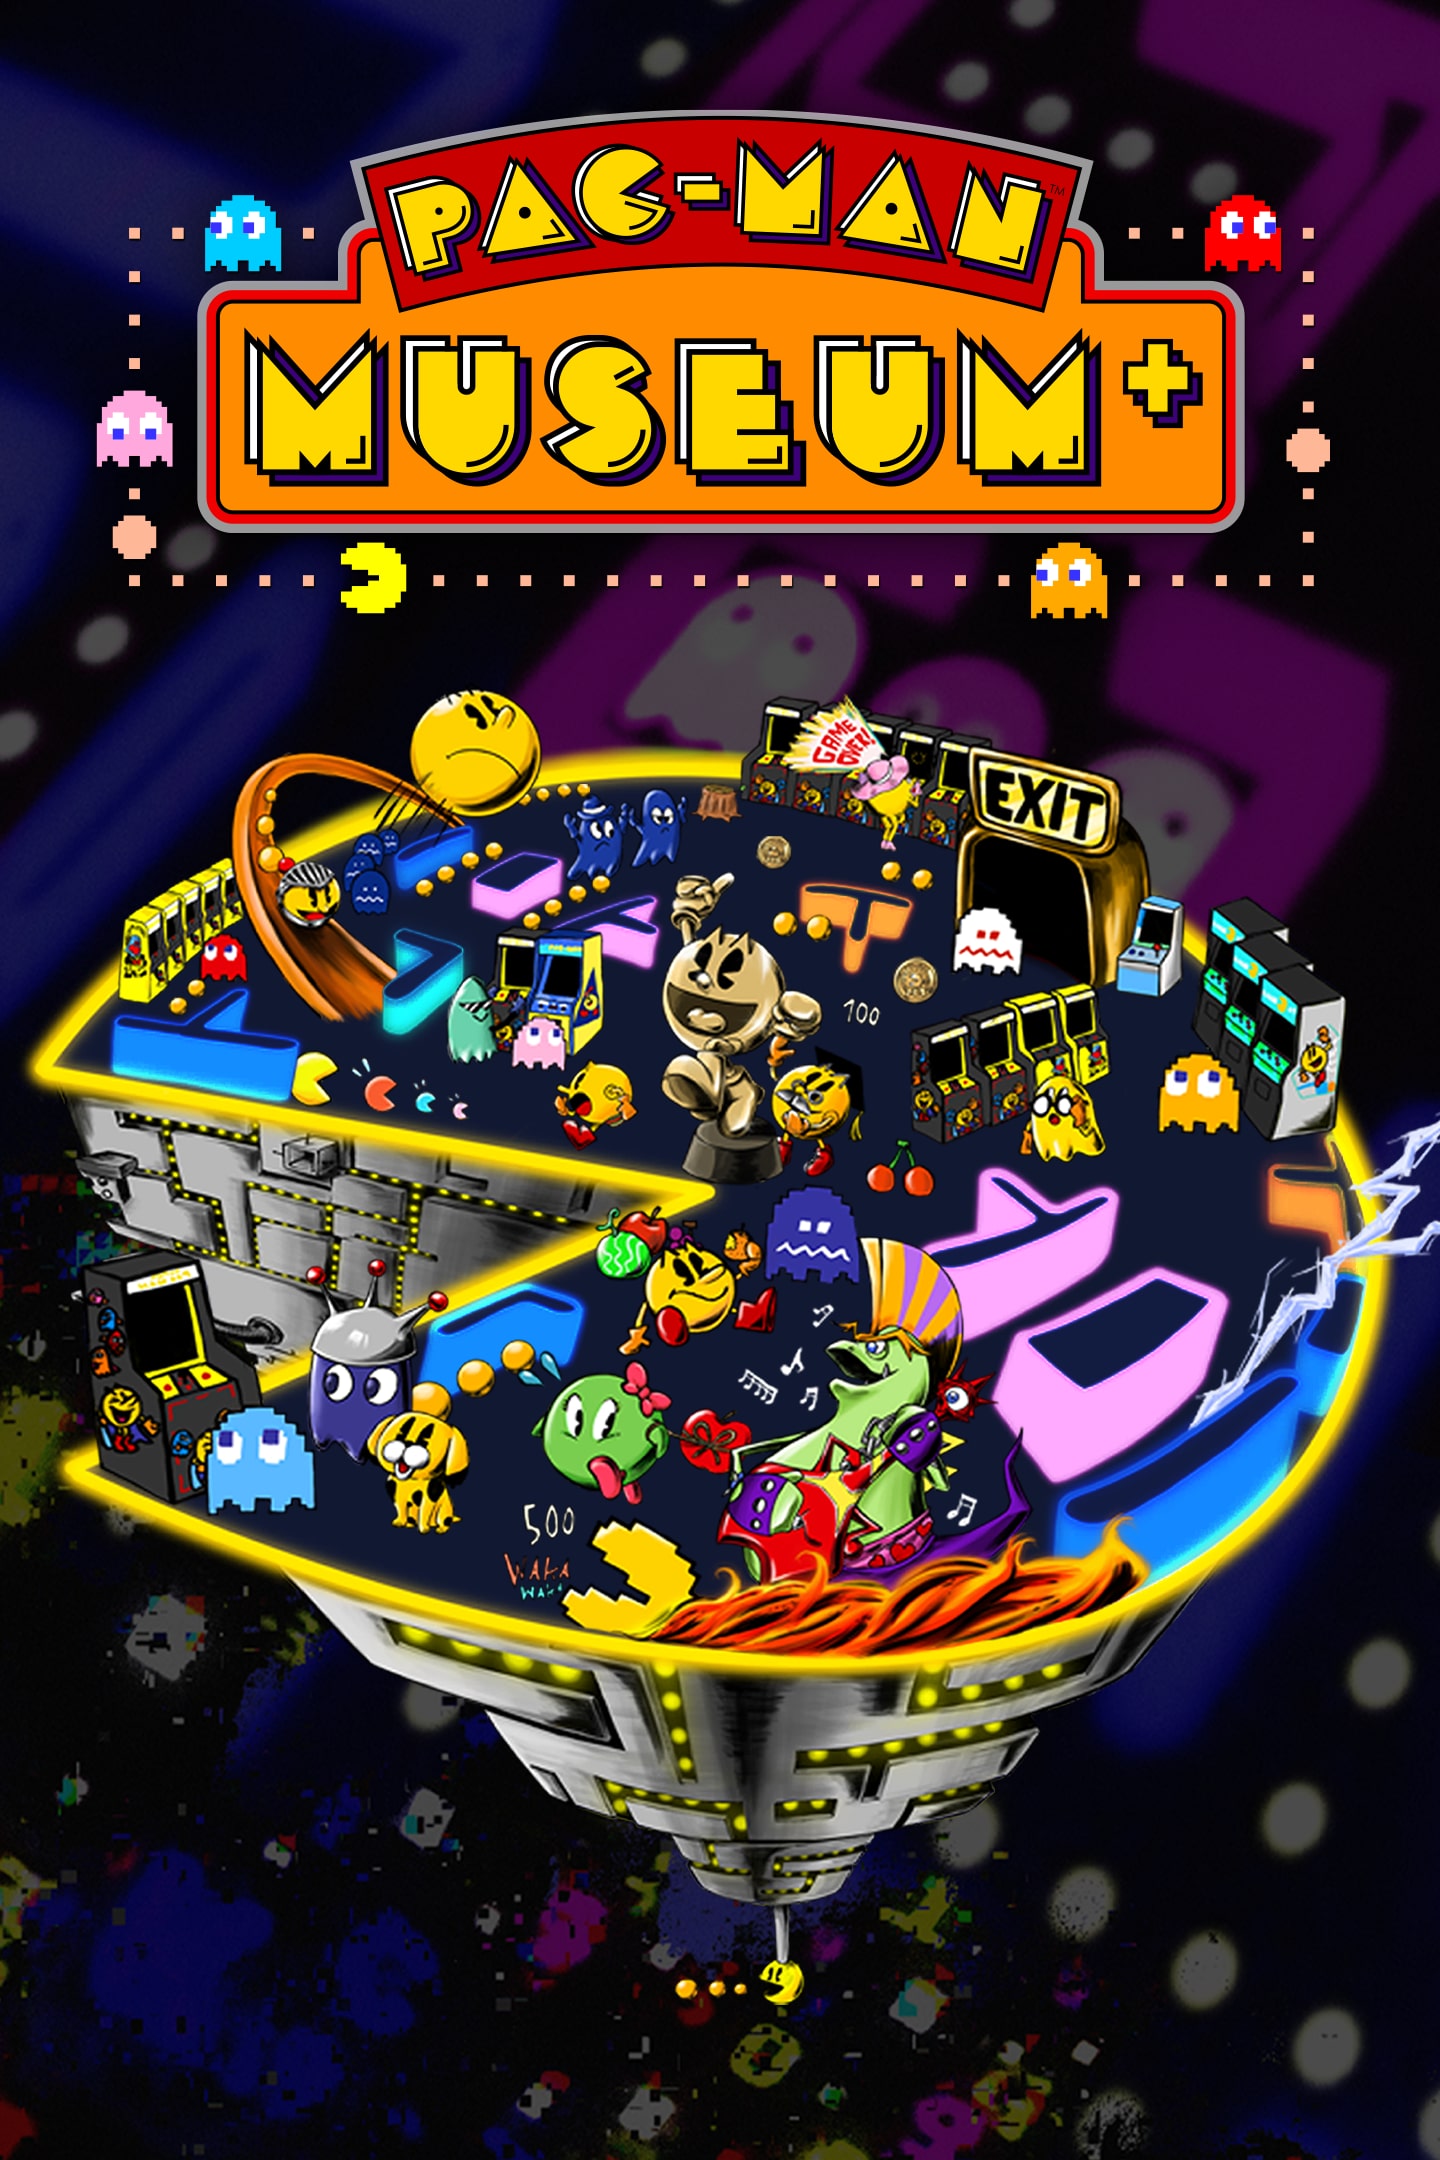 PAC-MAN MUSEUM+, Aplicações de download da Nintendo Switch, Jogos